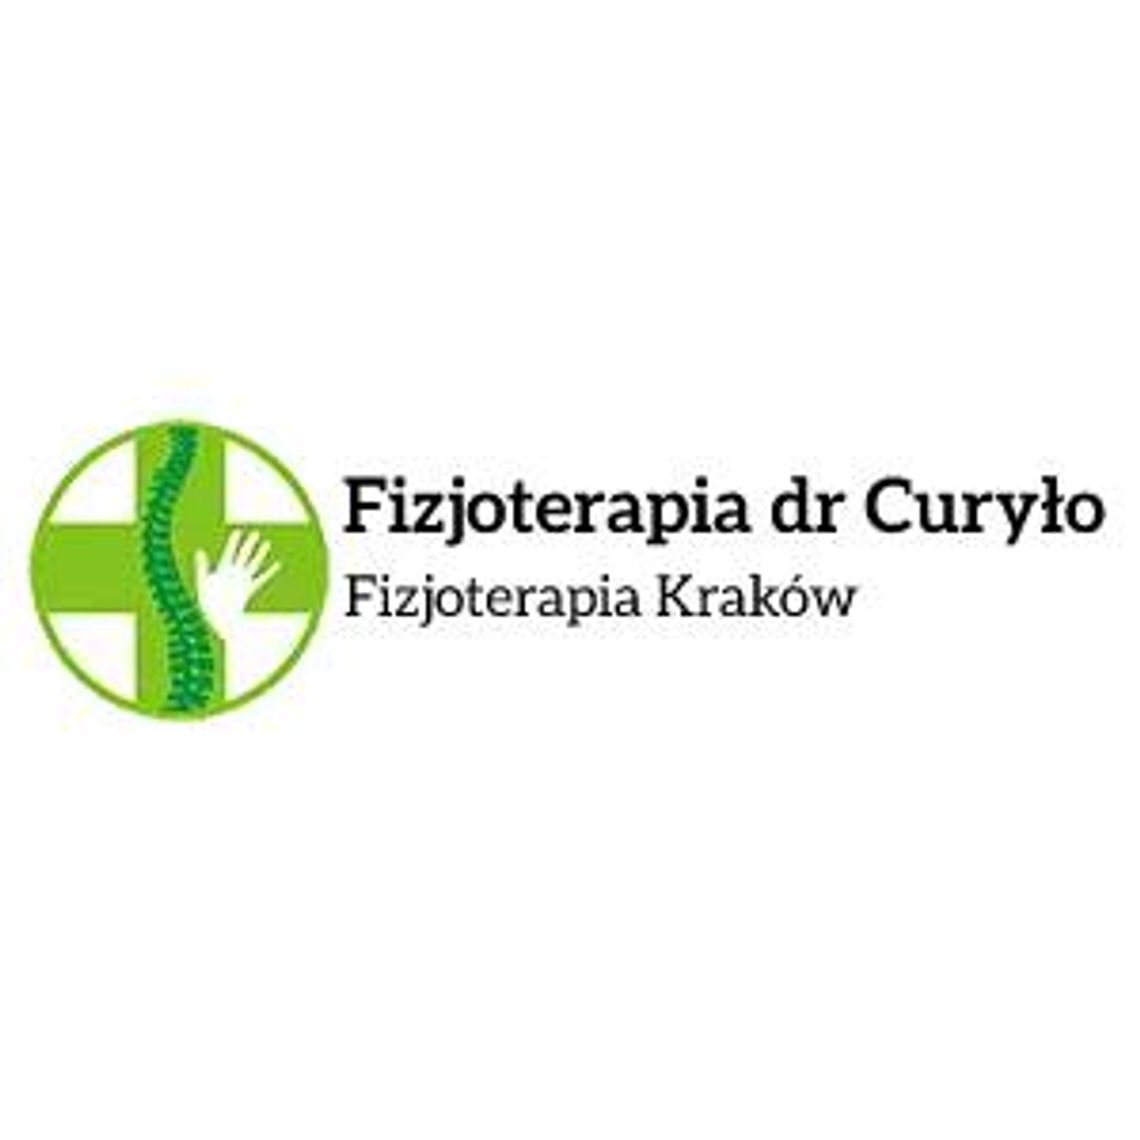 Zaopatrzenie ortopedyczne - Fizjoterapia dr Curyło